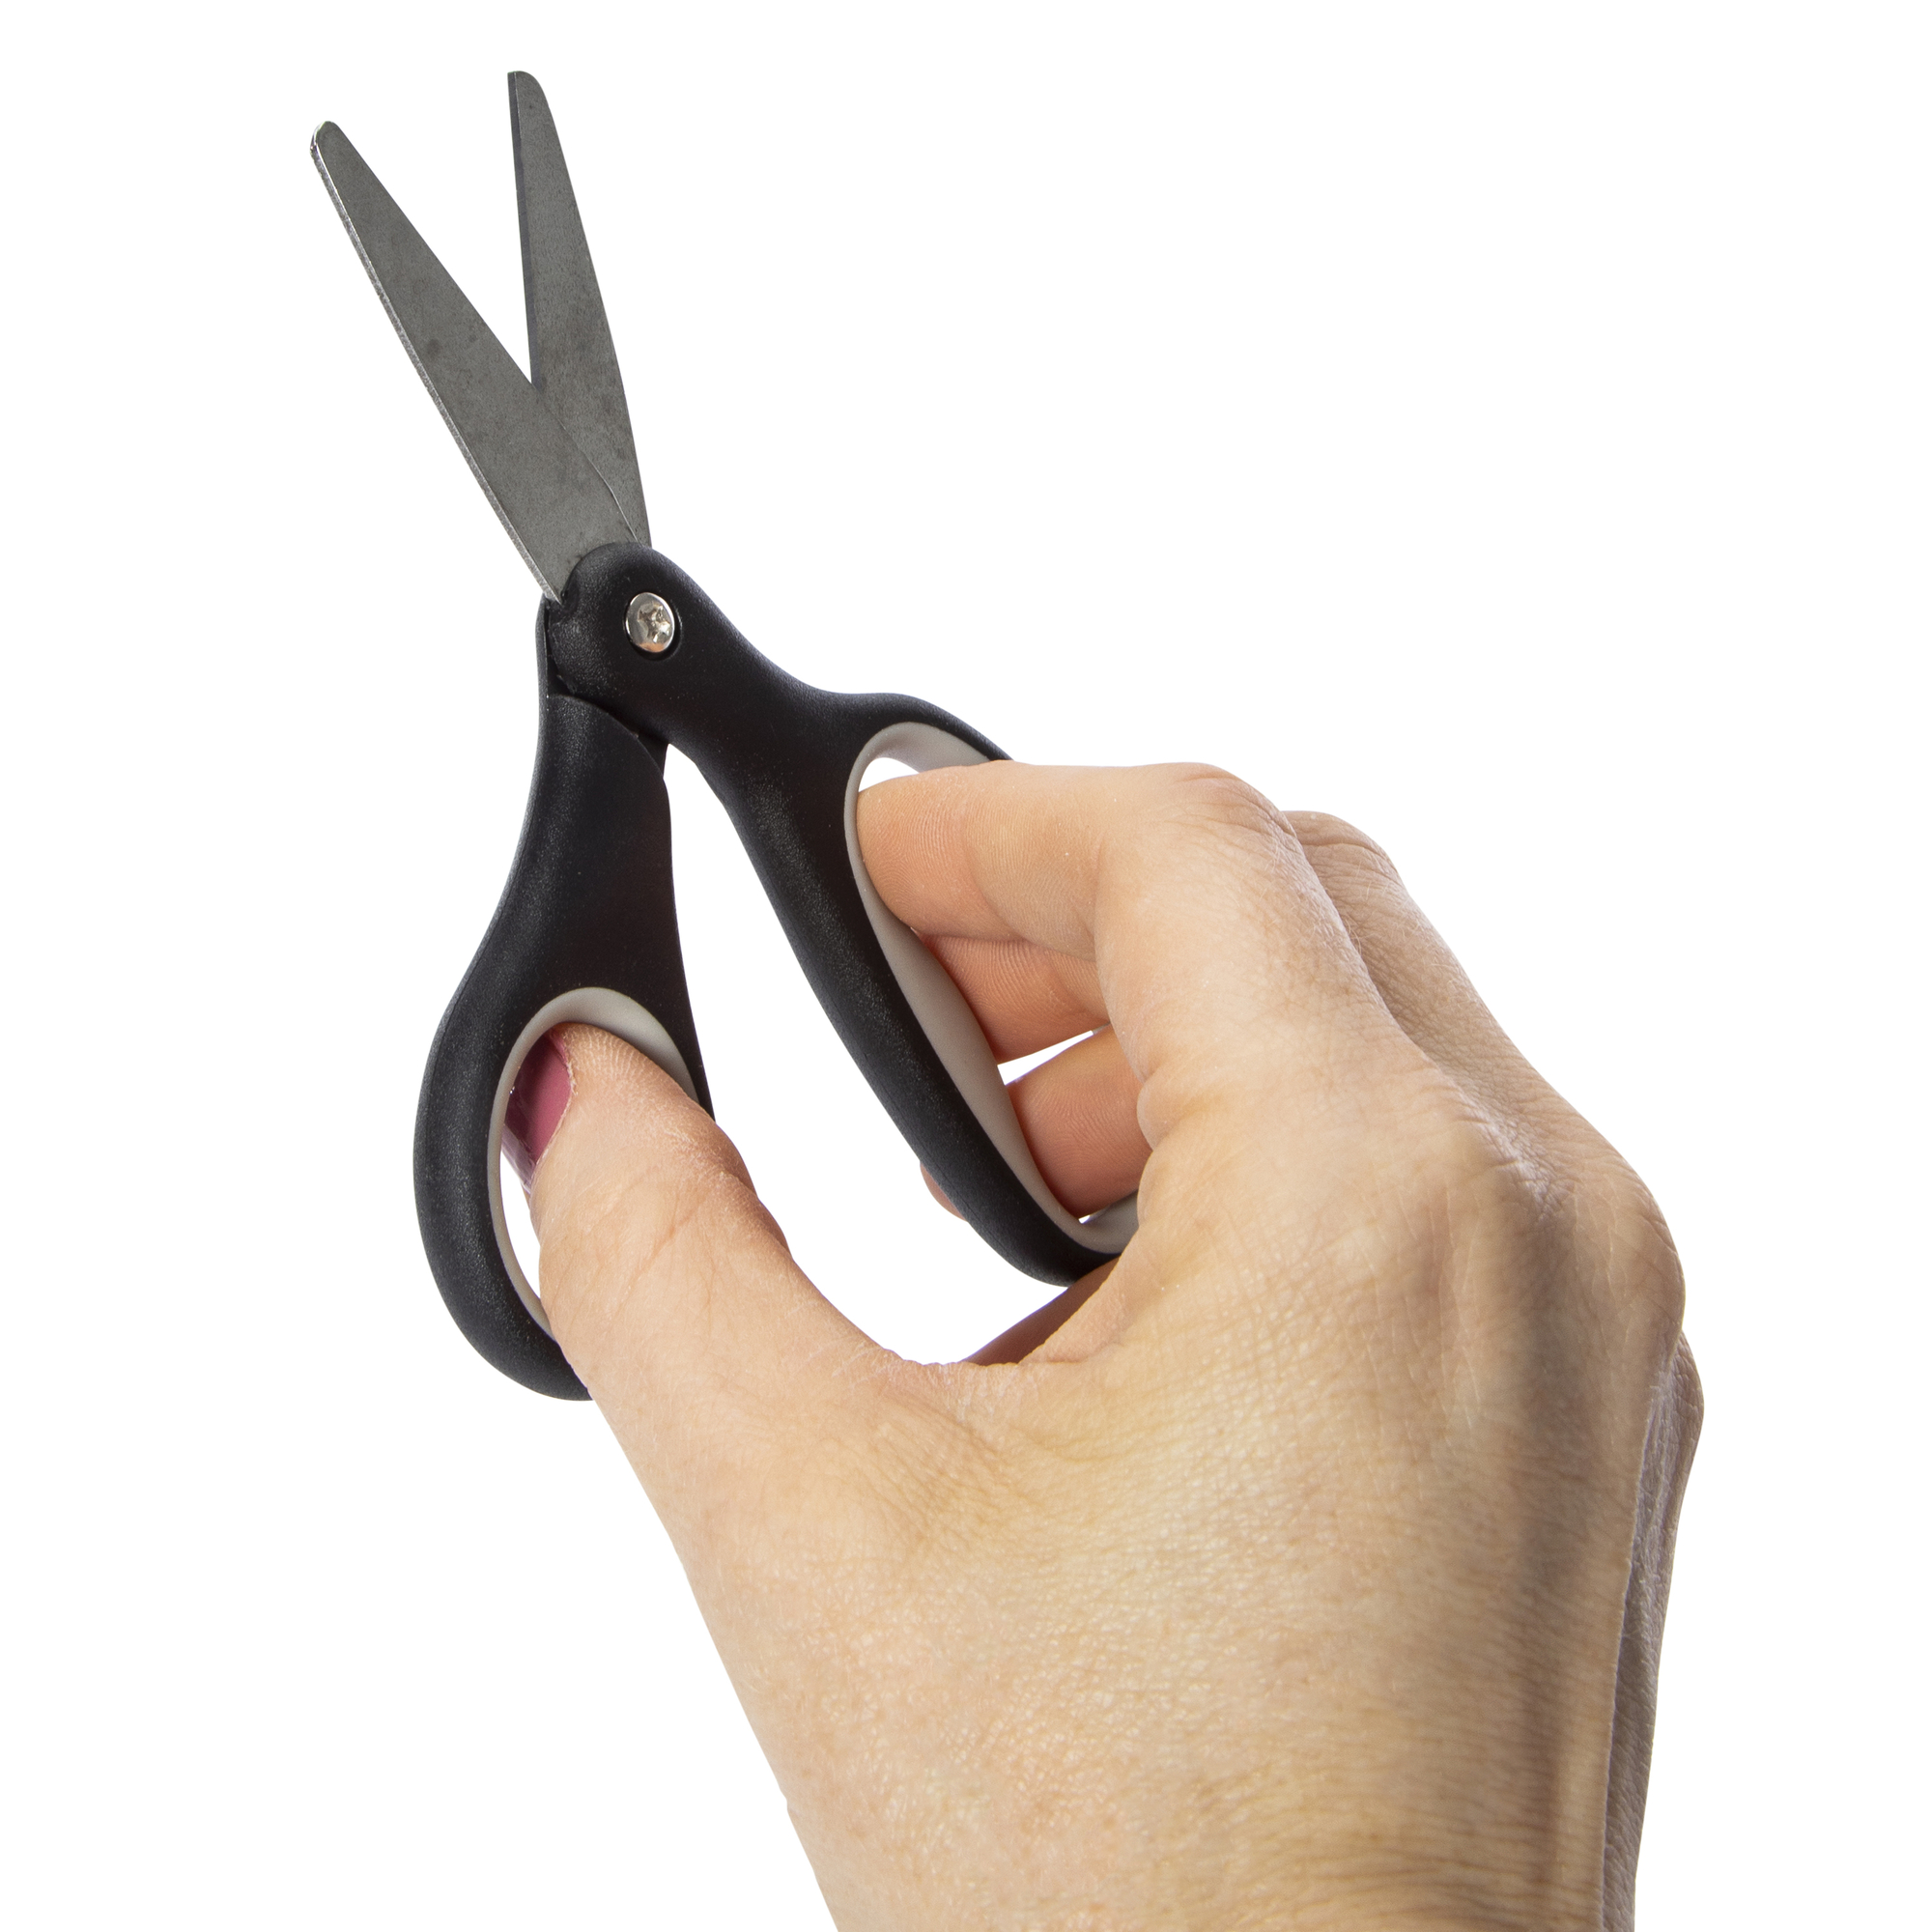 blunt-tip kid's scissors 5in